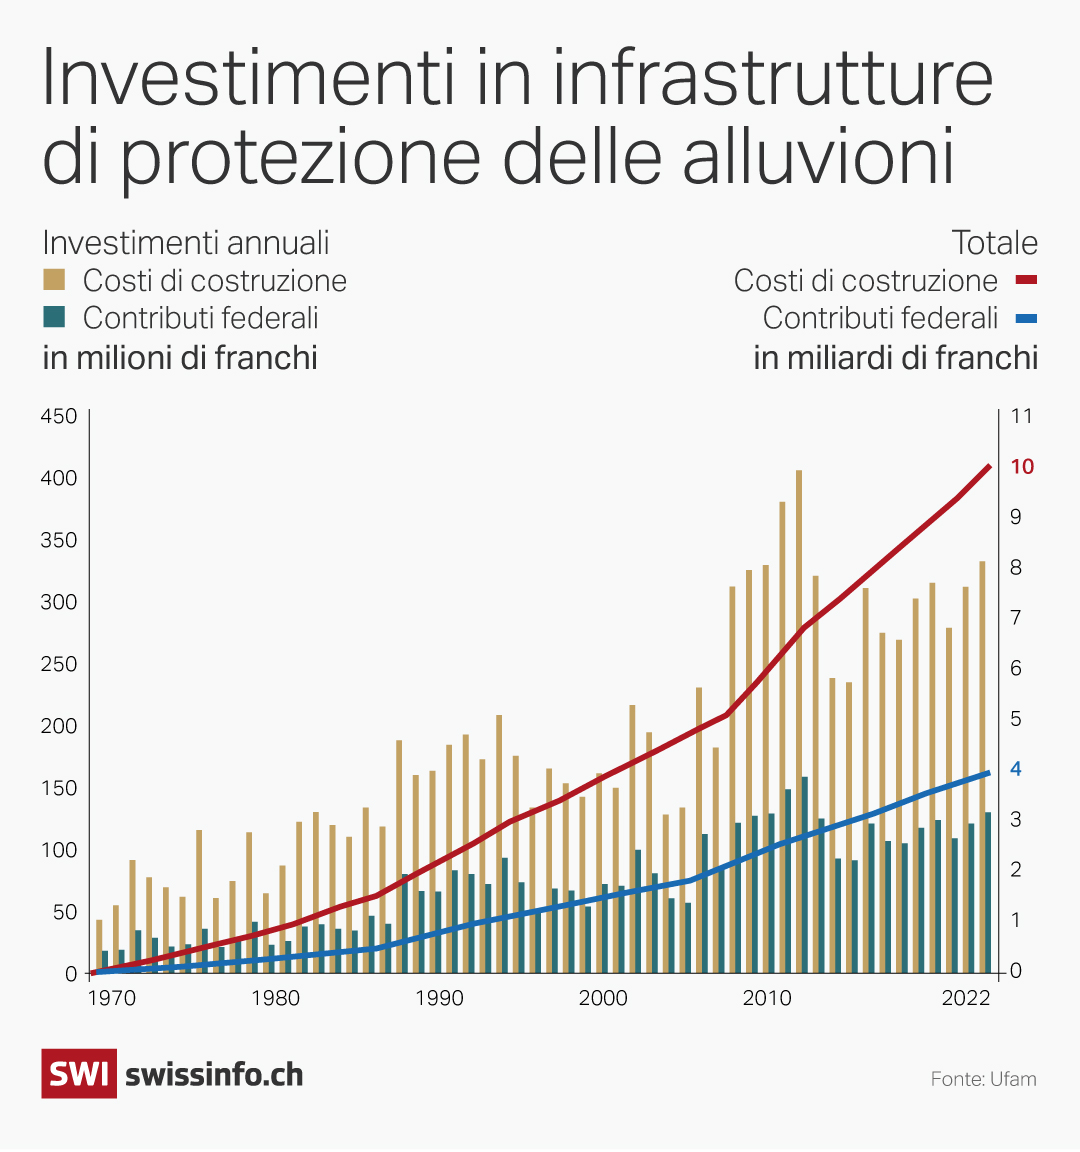 grafico che mostra gli investimenti in svizzera in infrastrutture di protezione dalle elluvioni